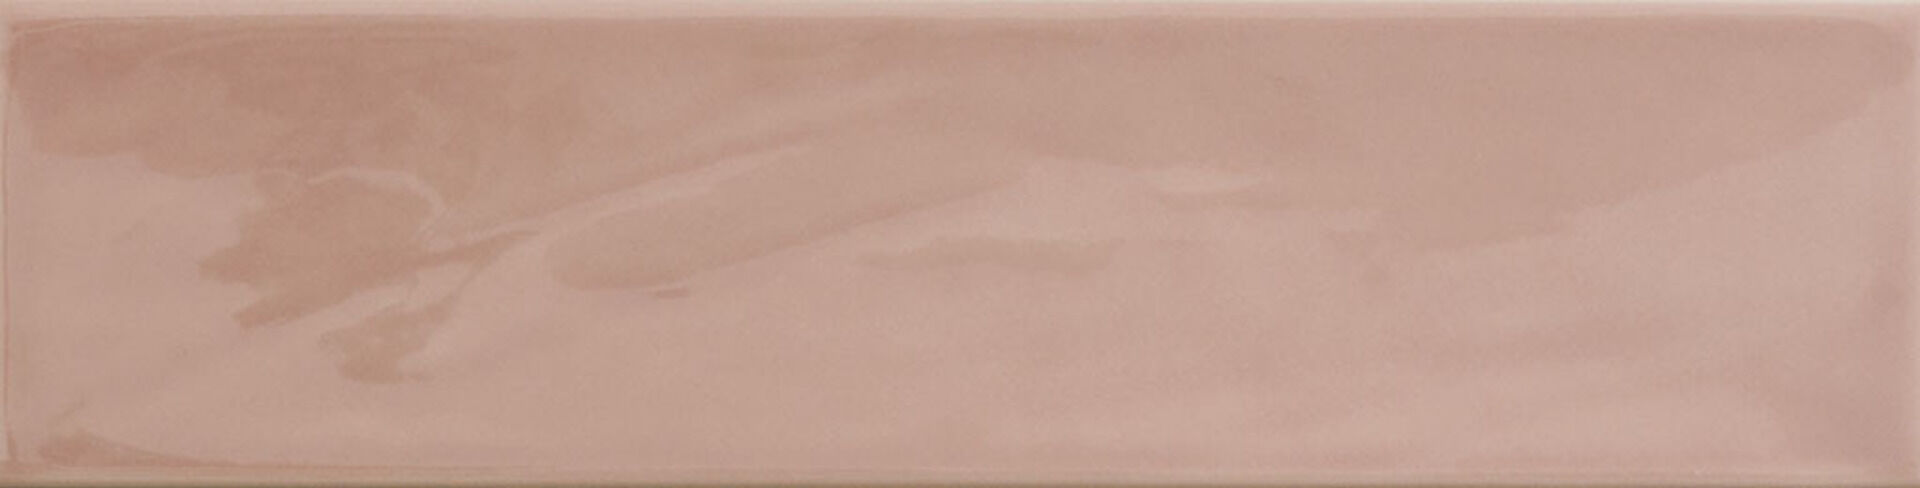 Керамическая плитка KANE PINK 7,5*30 / коллекция KANE / производитель CIFRE CERAMICA / страна Испания